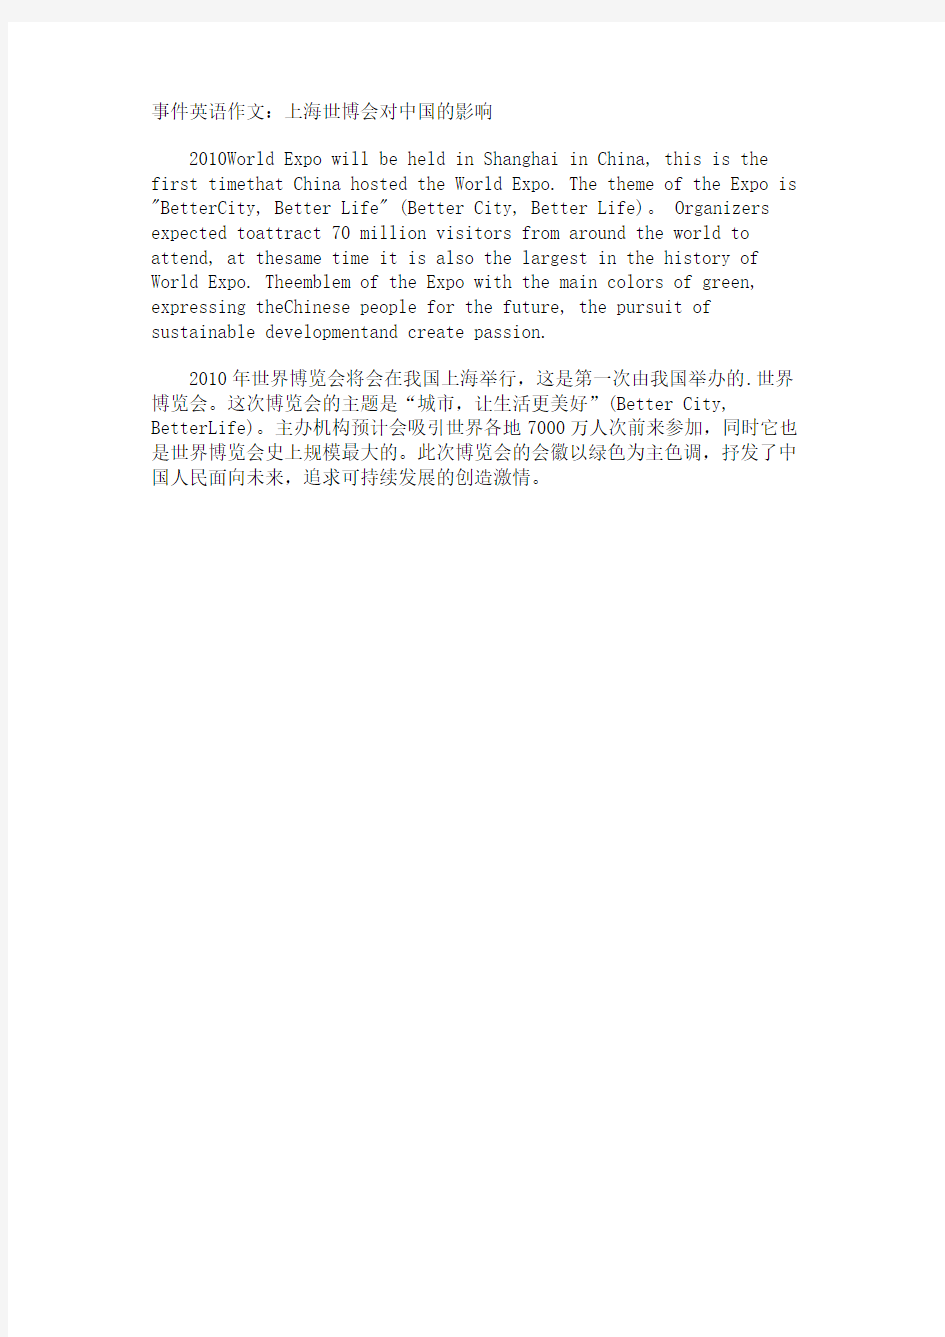 事件英语作文上海世博会对中国的影响